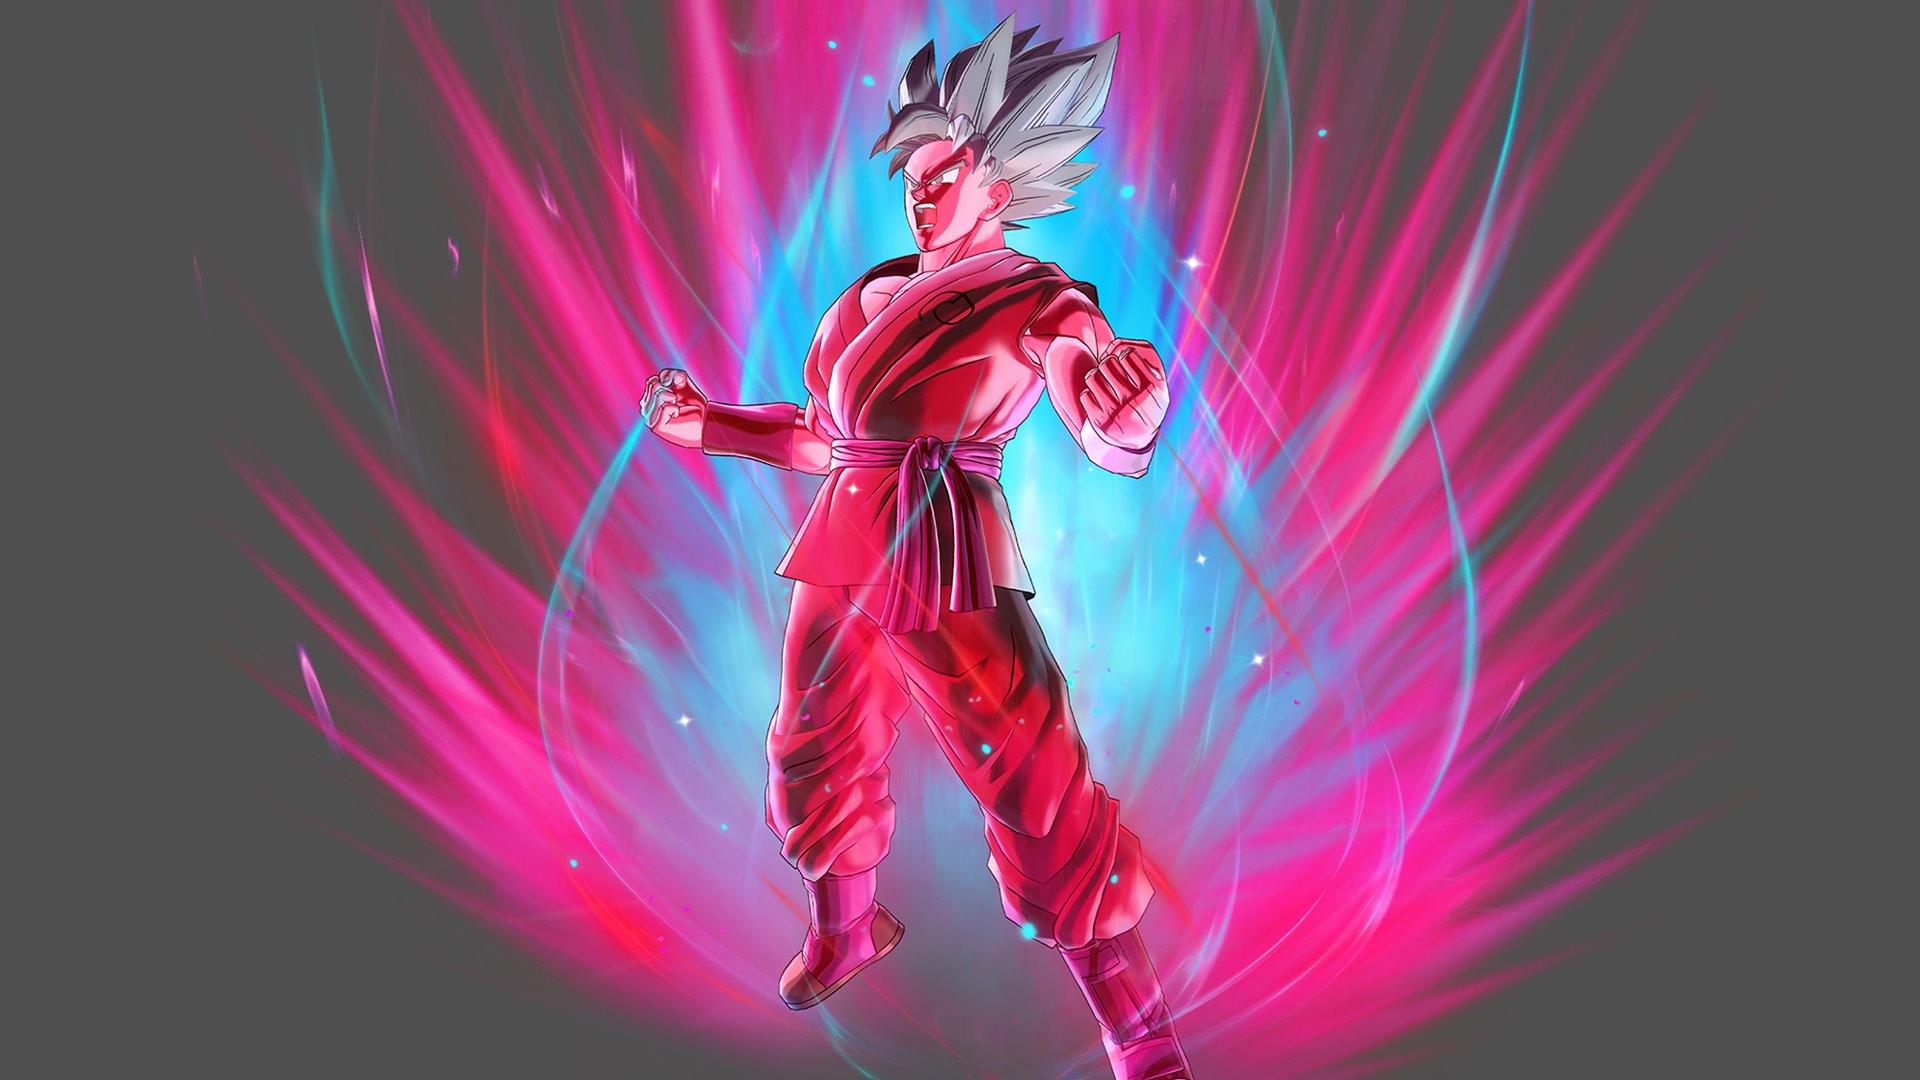 Goku Power Up Dragon Ball Xenoverse. Wallpaper